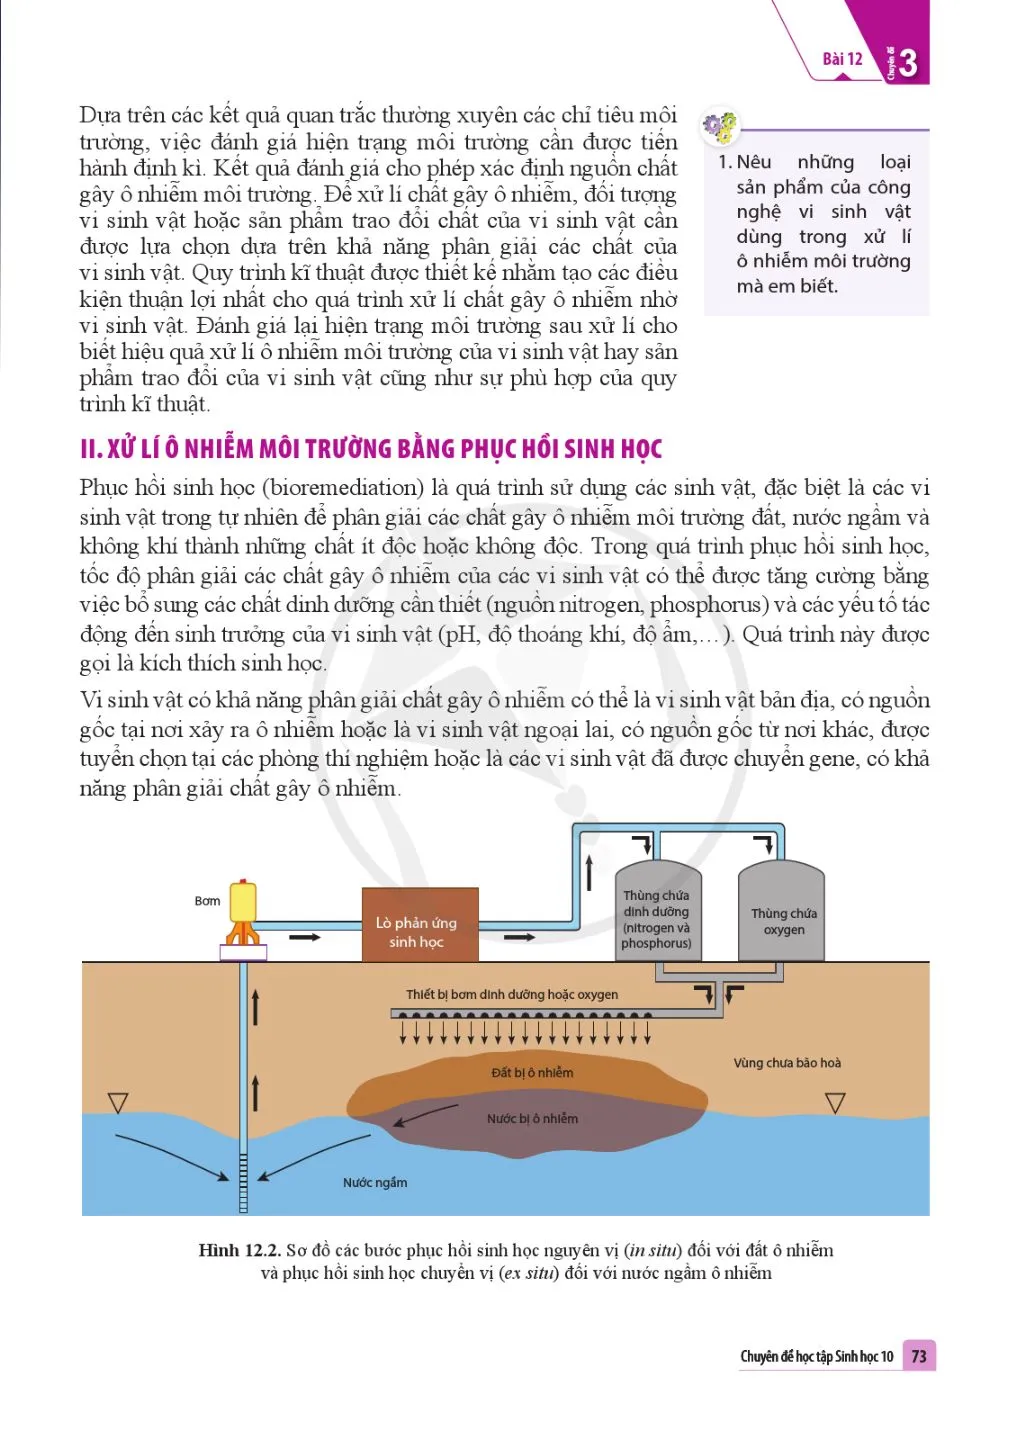 Bài 12 Công nghệ ứng dụng vi sinh vật trong xử lí ô nhiễm môi trường đất, nước